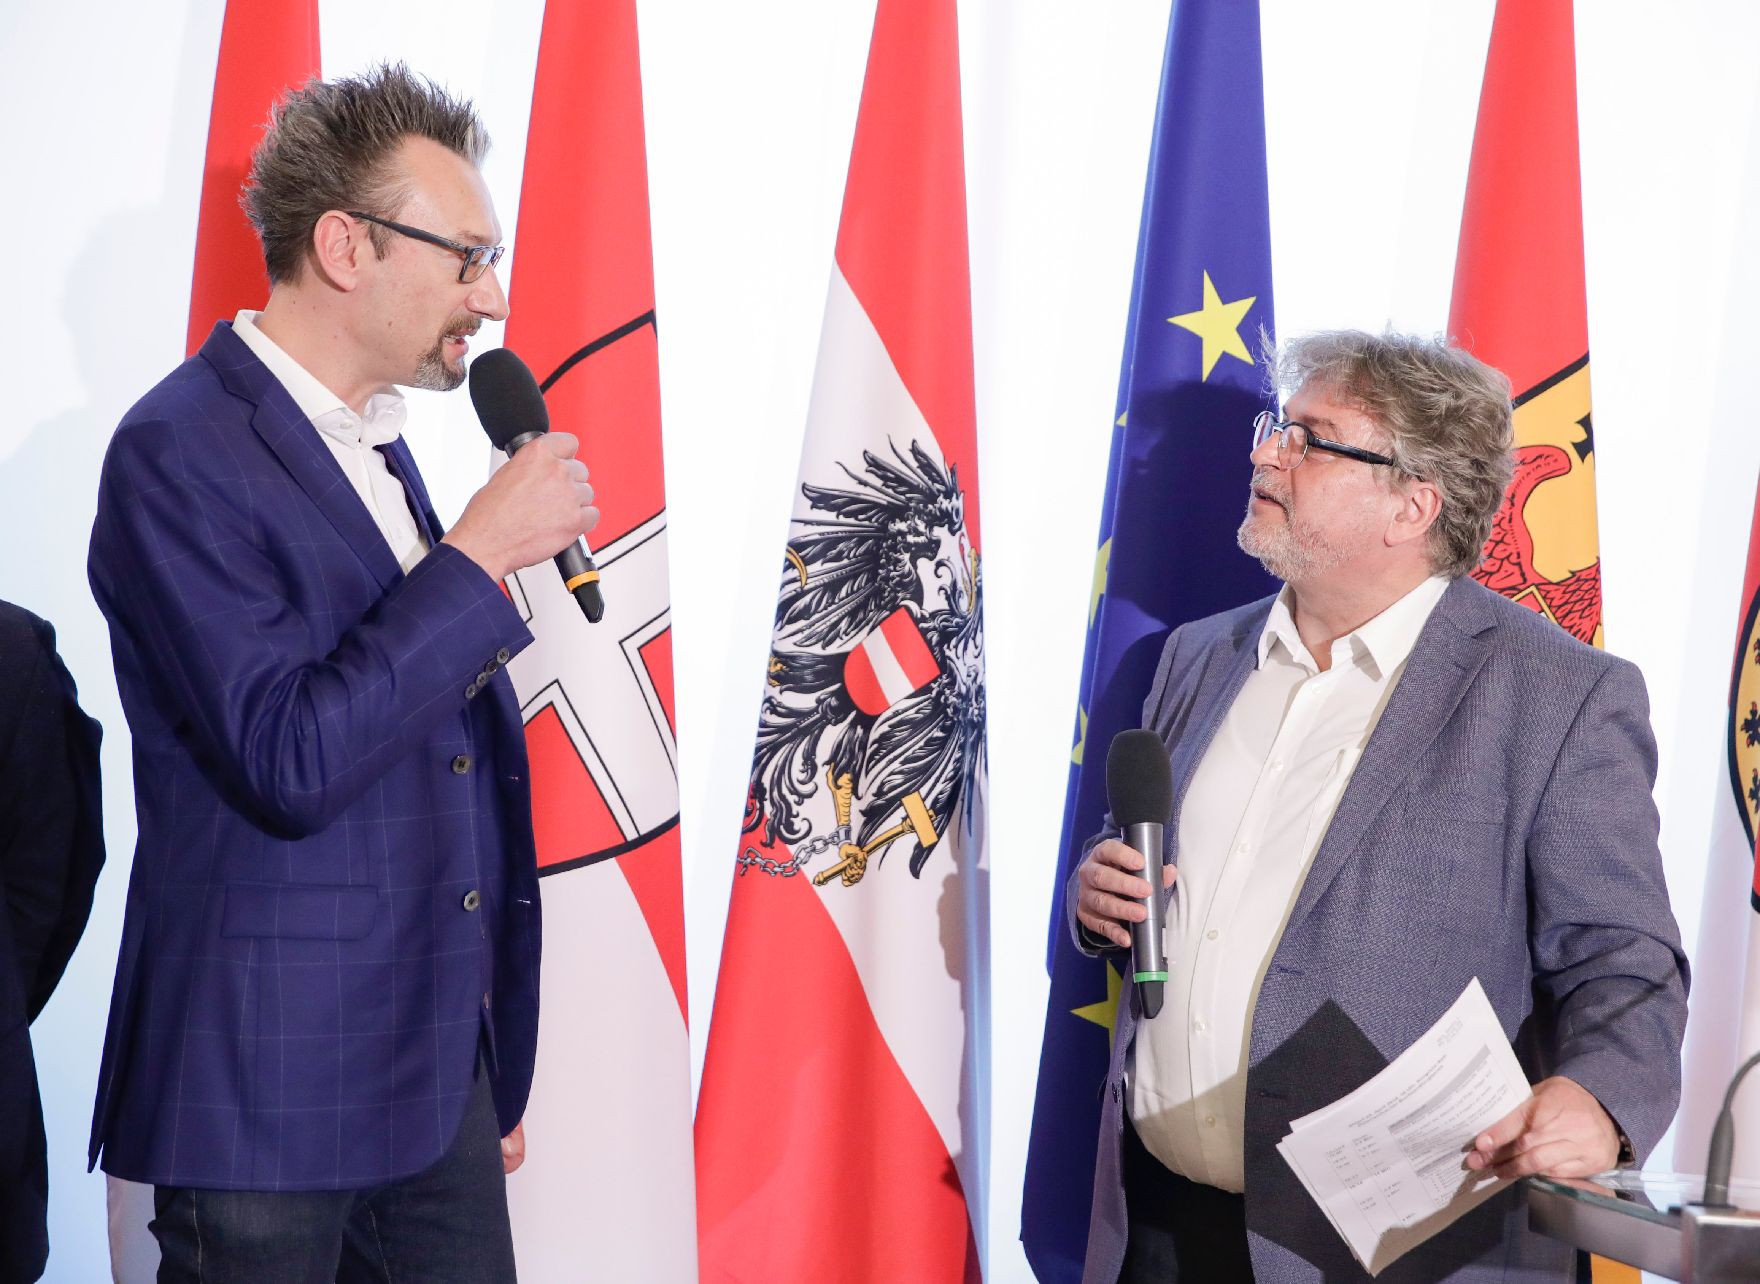 Am 25. April 2018 fand die Überreichung des Österreichischen Buchhandlungspreises im Bundeskanzleramt statt. Im Bild Moderator Norbert Mayer (r.) mit dem Preisträger der Buchhandlung "Johannes Heyn".